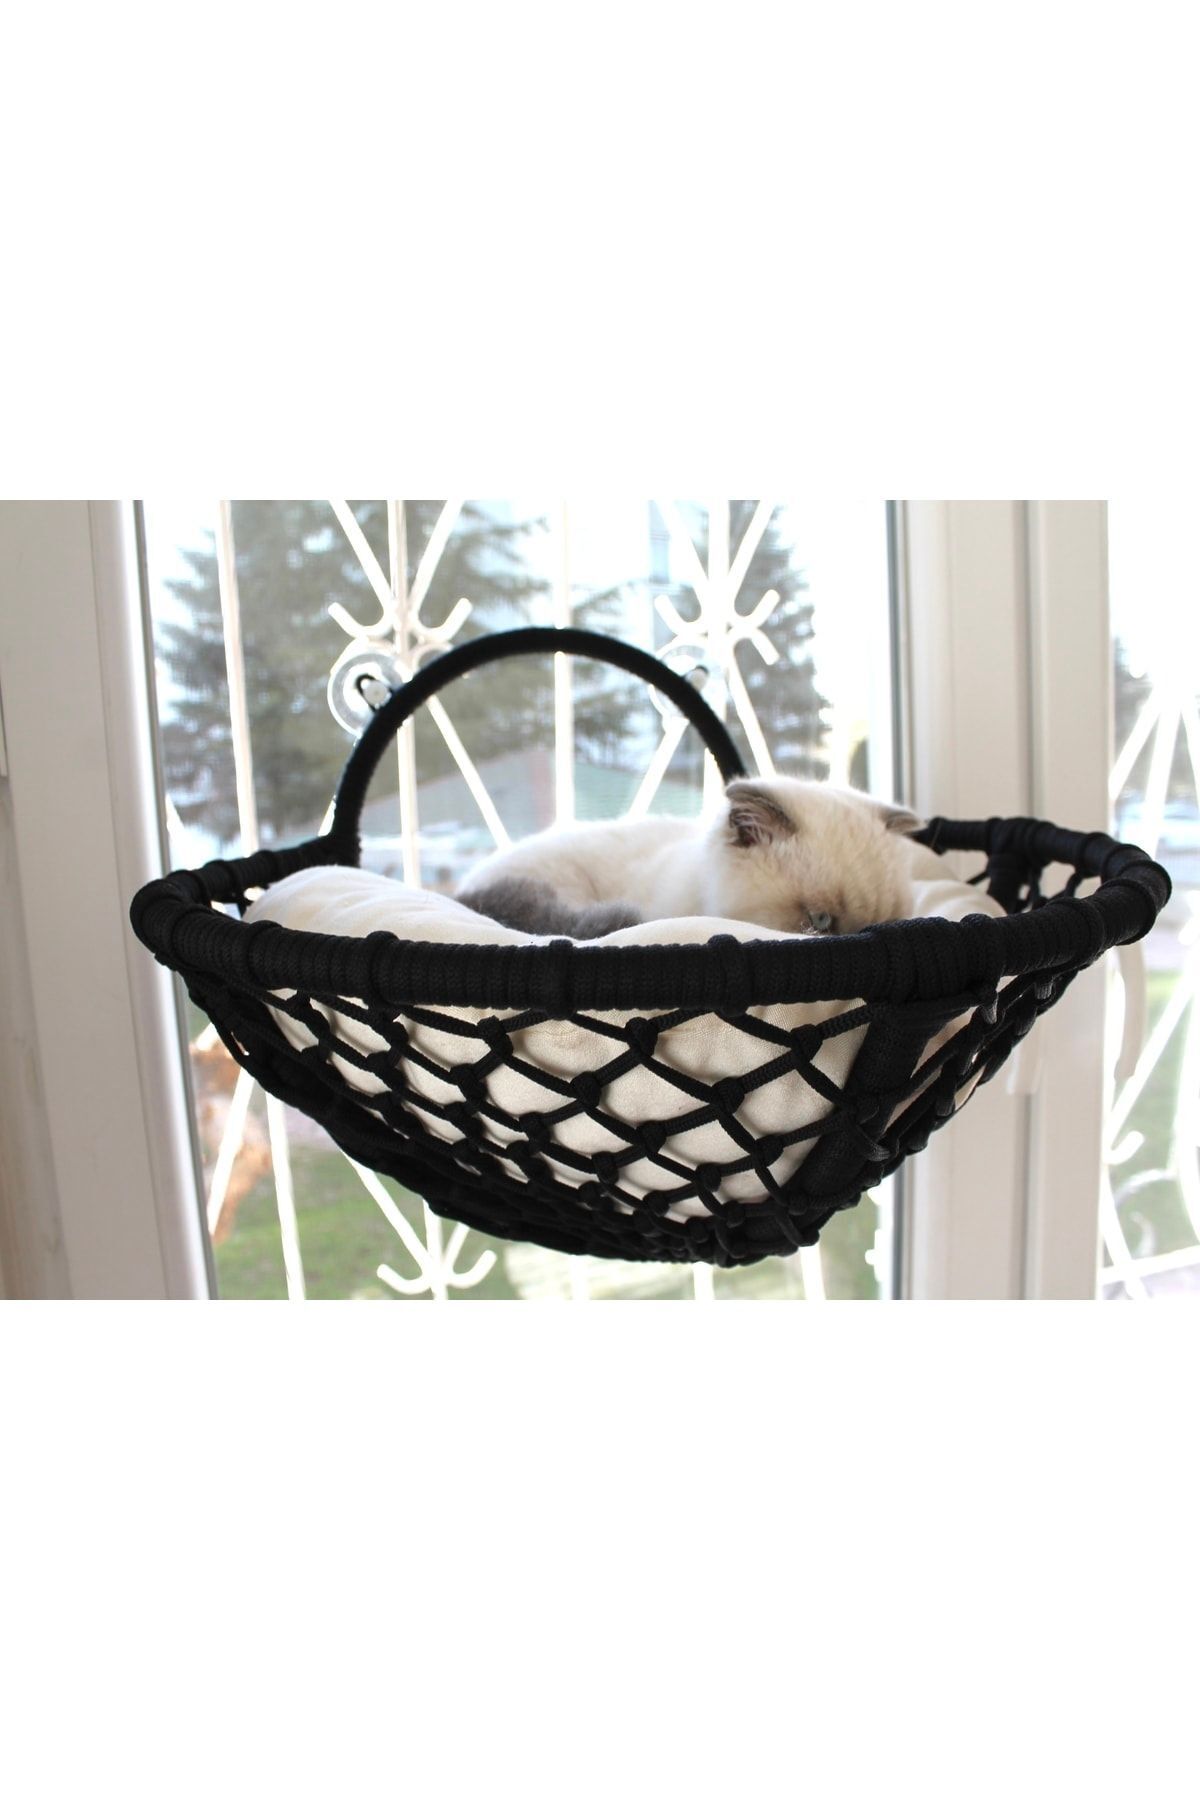 lüxperi Kedi Cam Vantuzlu Yatak & Kedi Yatağı & Cam Yatağı